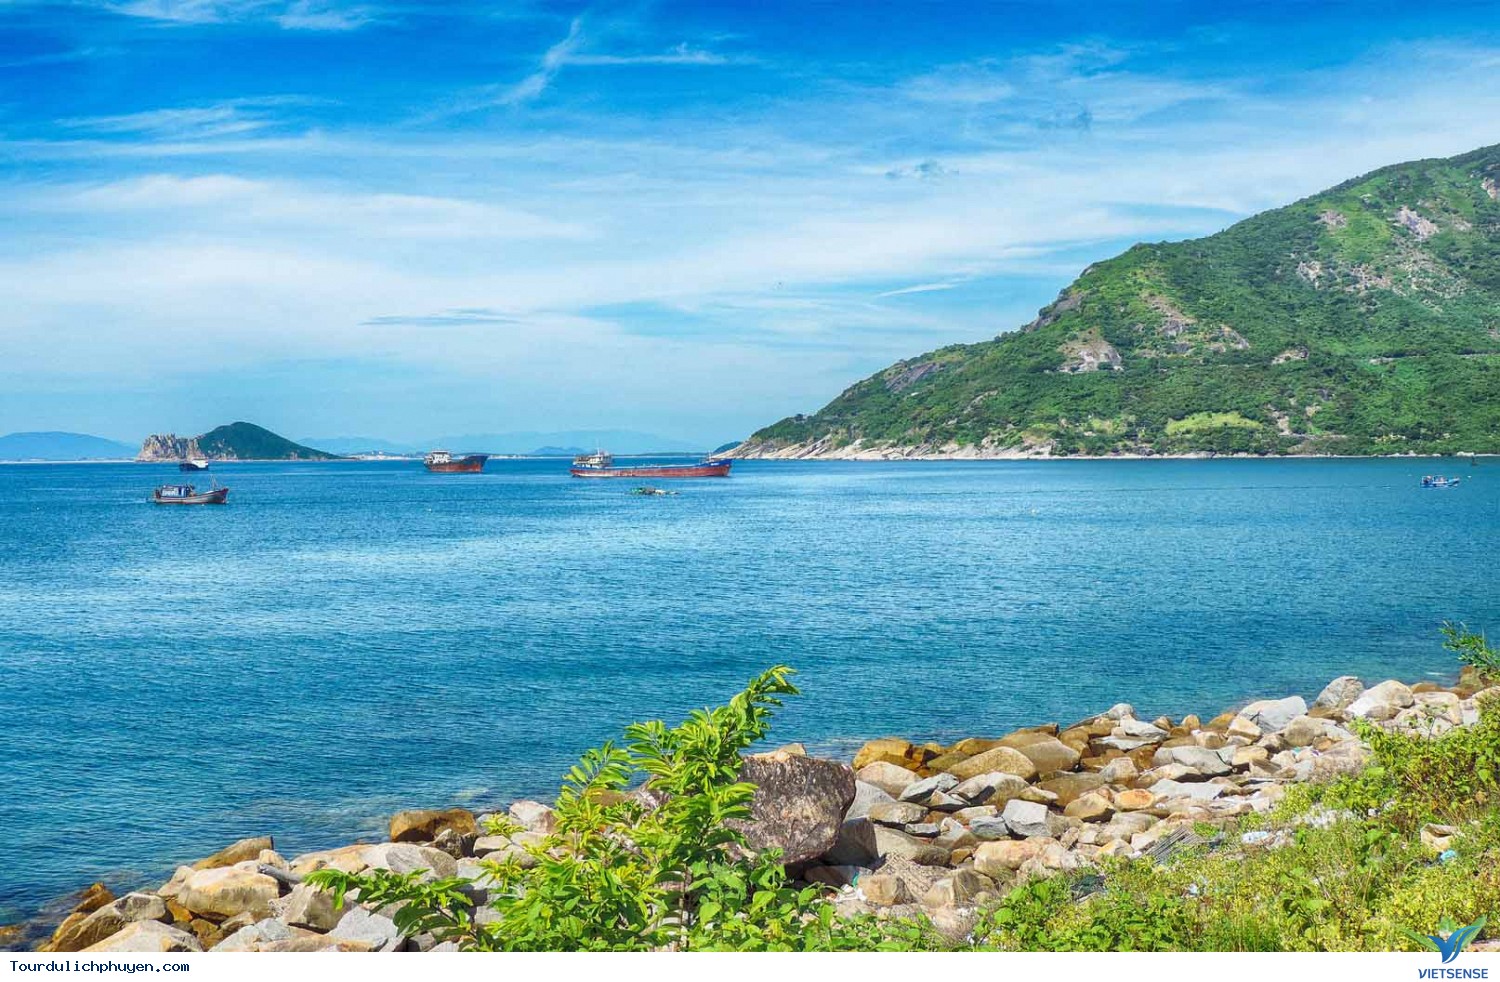 Khám phá sự hùng vĩ của đập Tam Giang khi du lịch Phú Yên